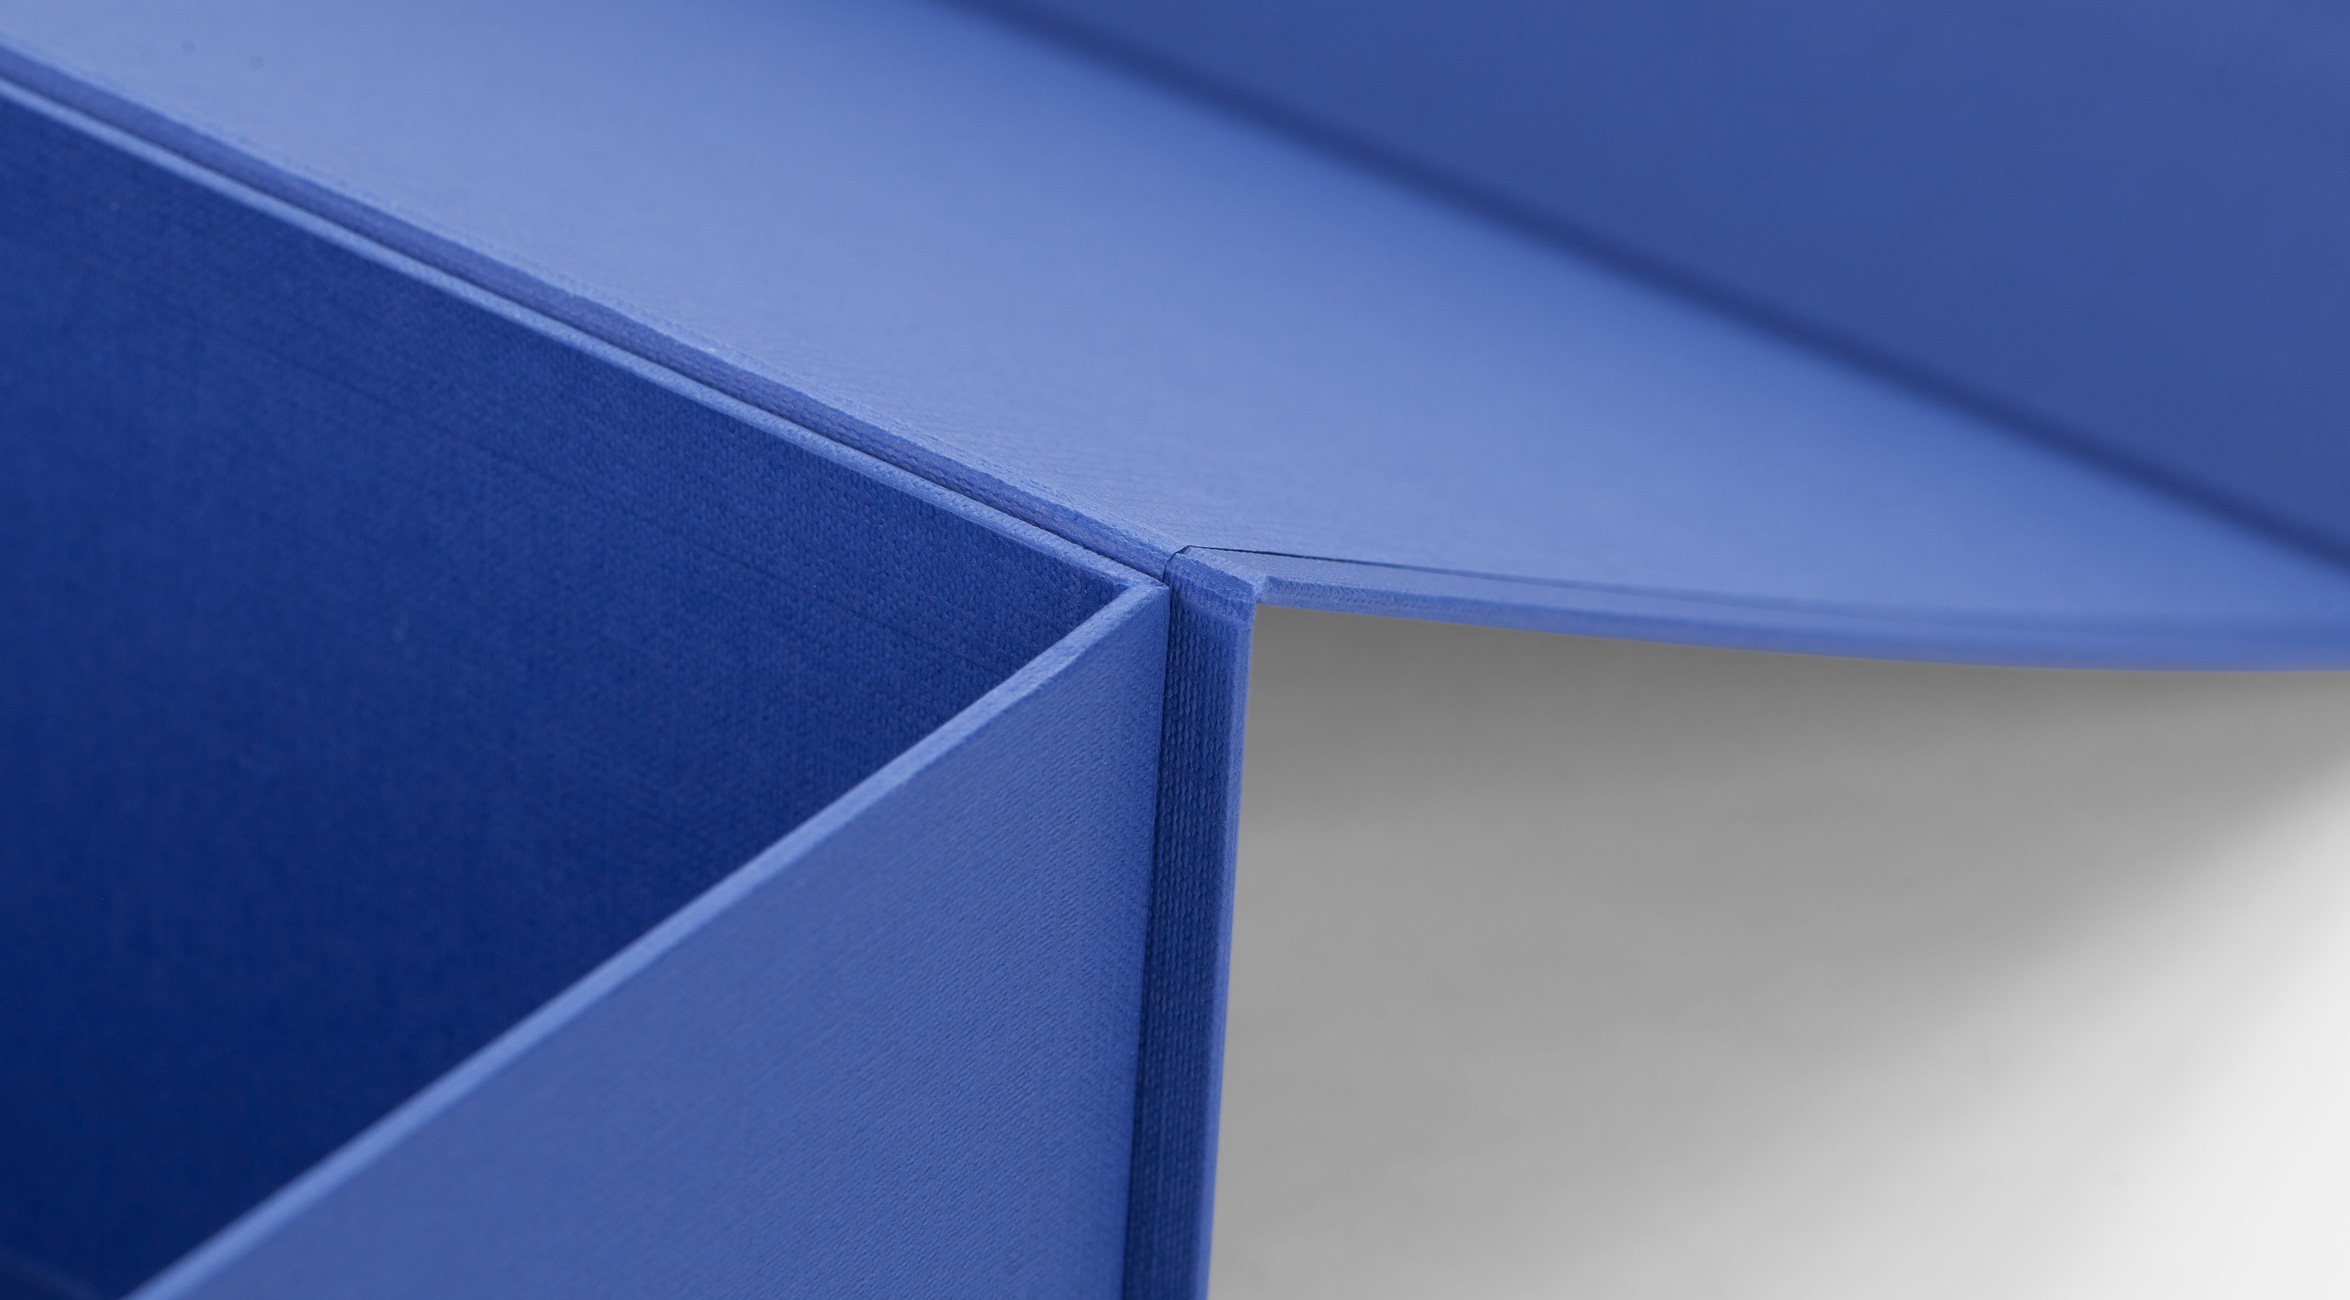 geltex azul mar paper on magnetic box for employer branding Nexo